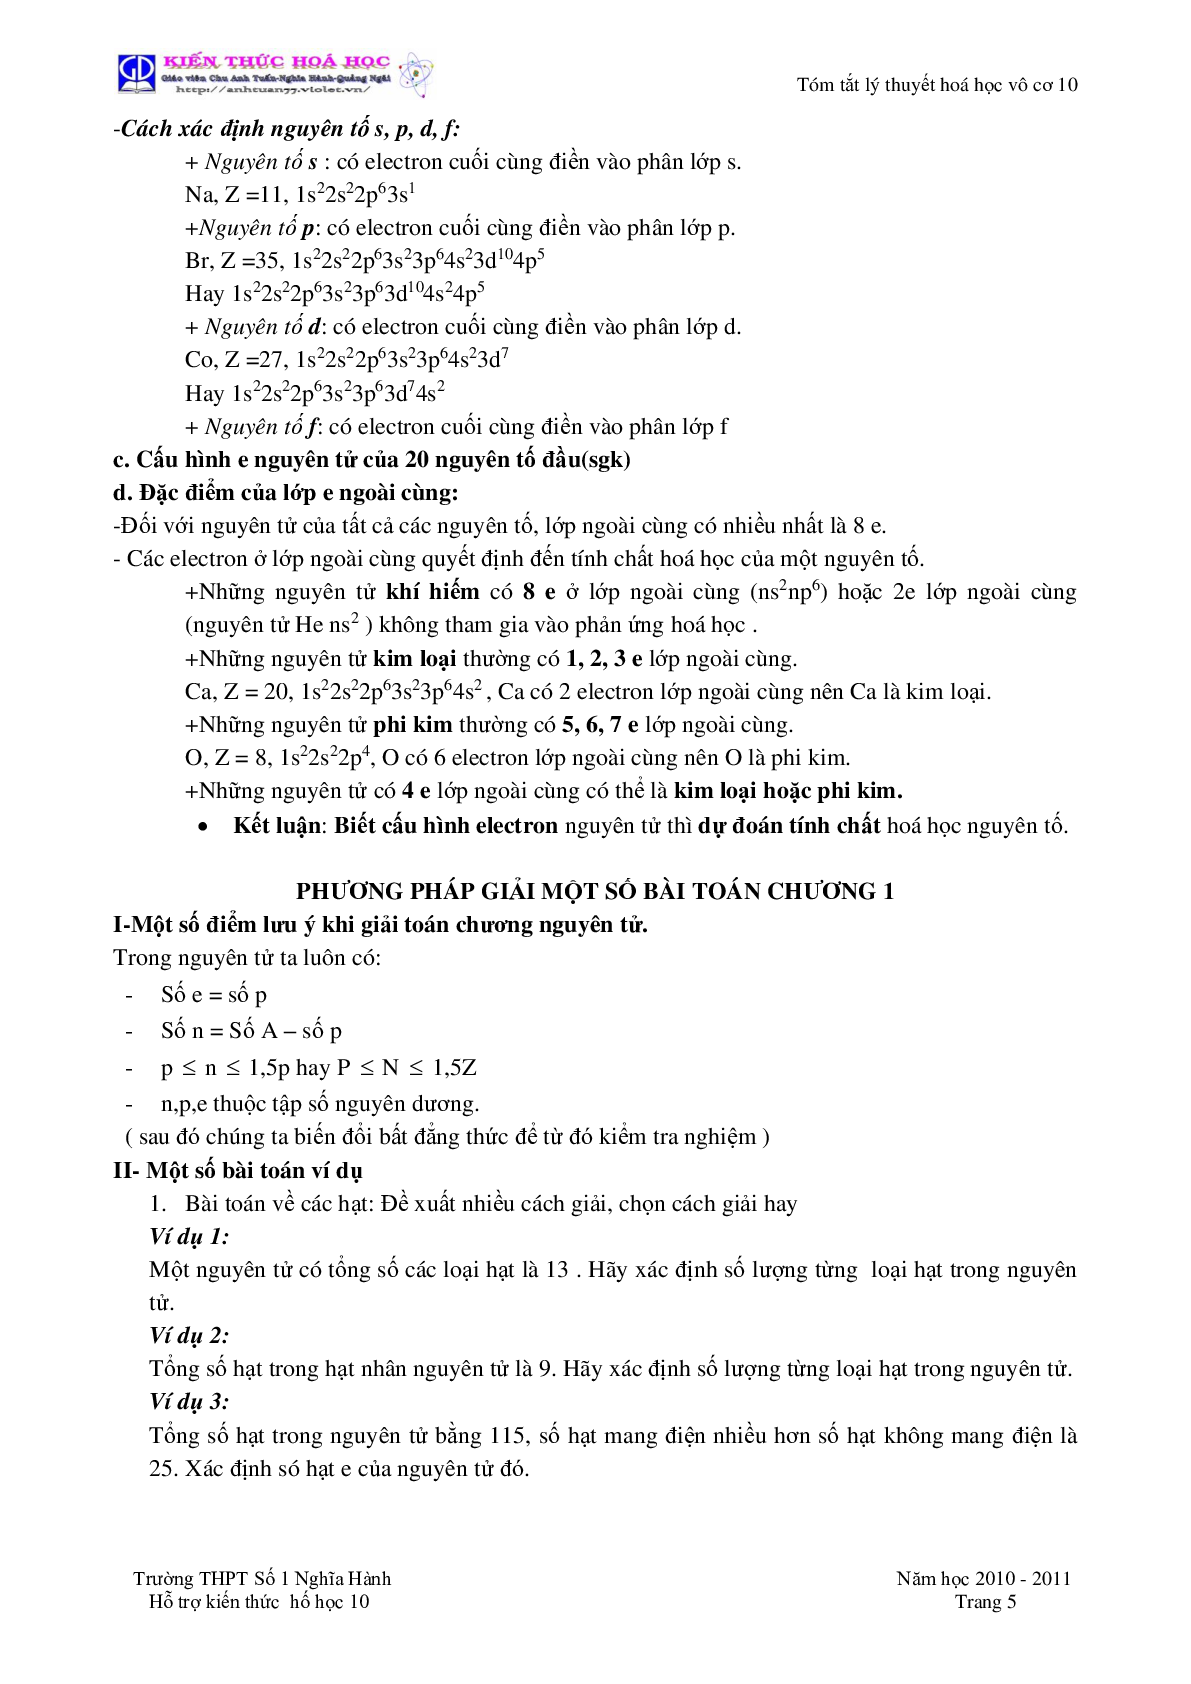 Tóm tắt lý thuyết môn Hóa Học lớp 10 (trang 5)